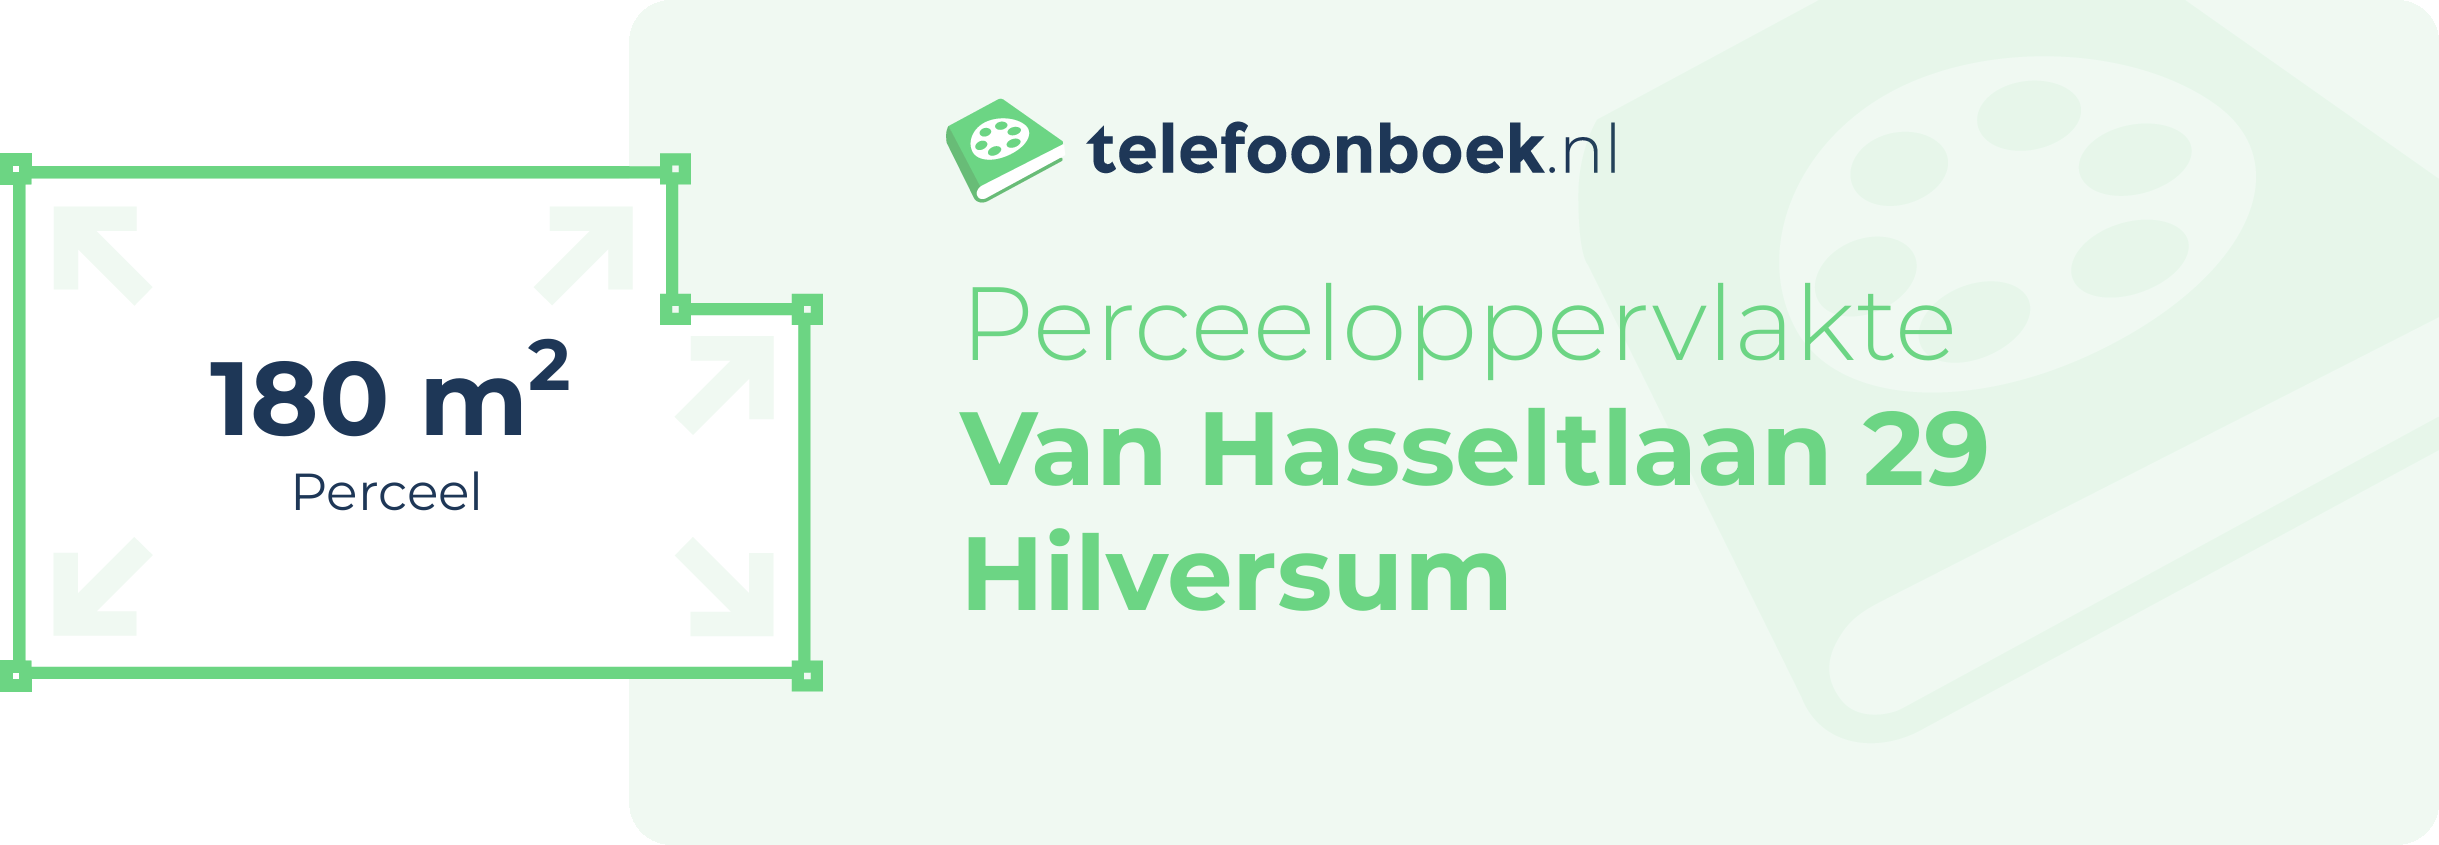 Perceeloppervlakte Van Hasseltlaan 29 Hilversum